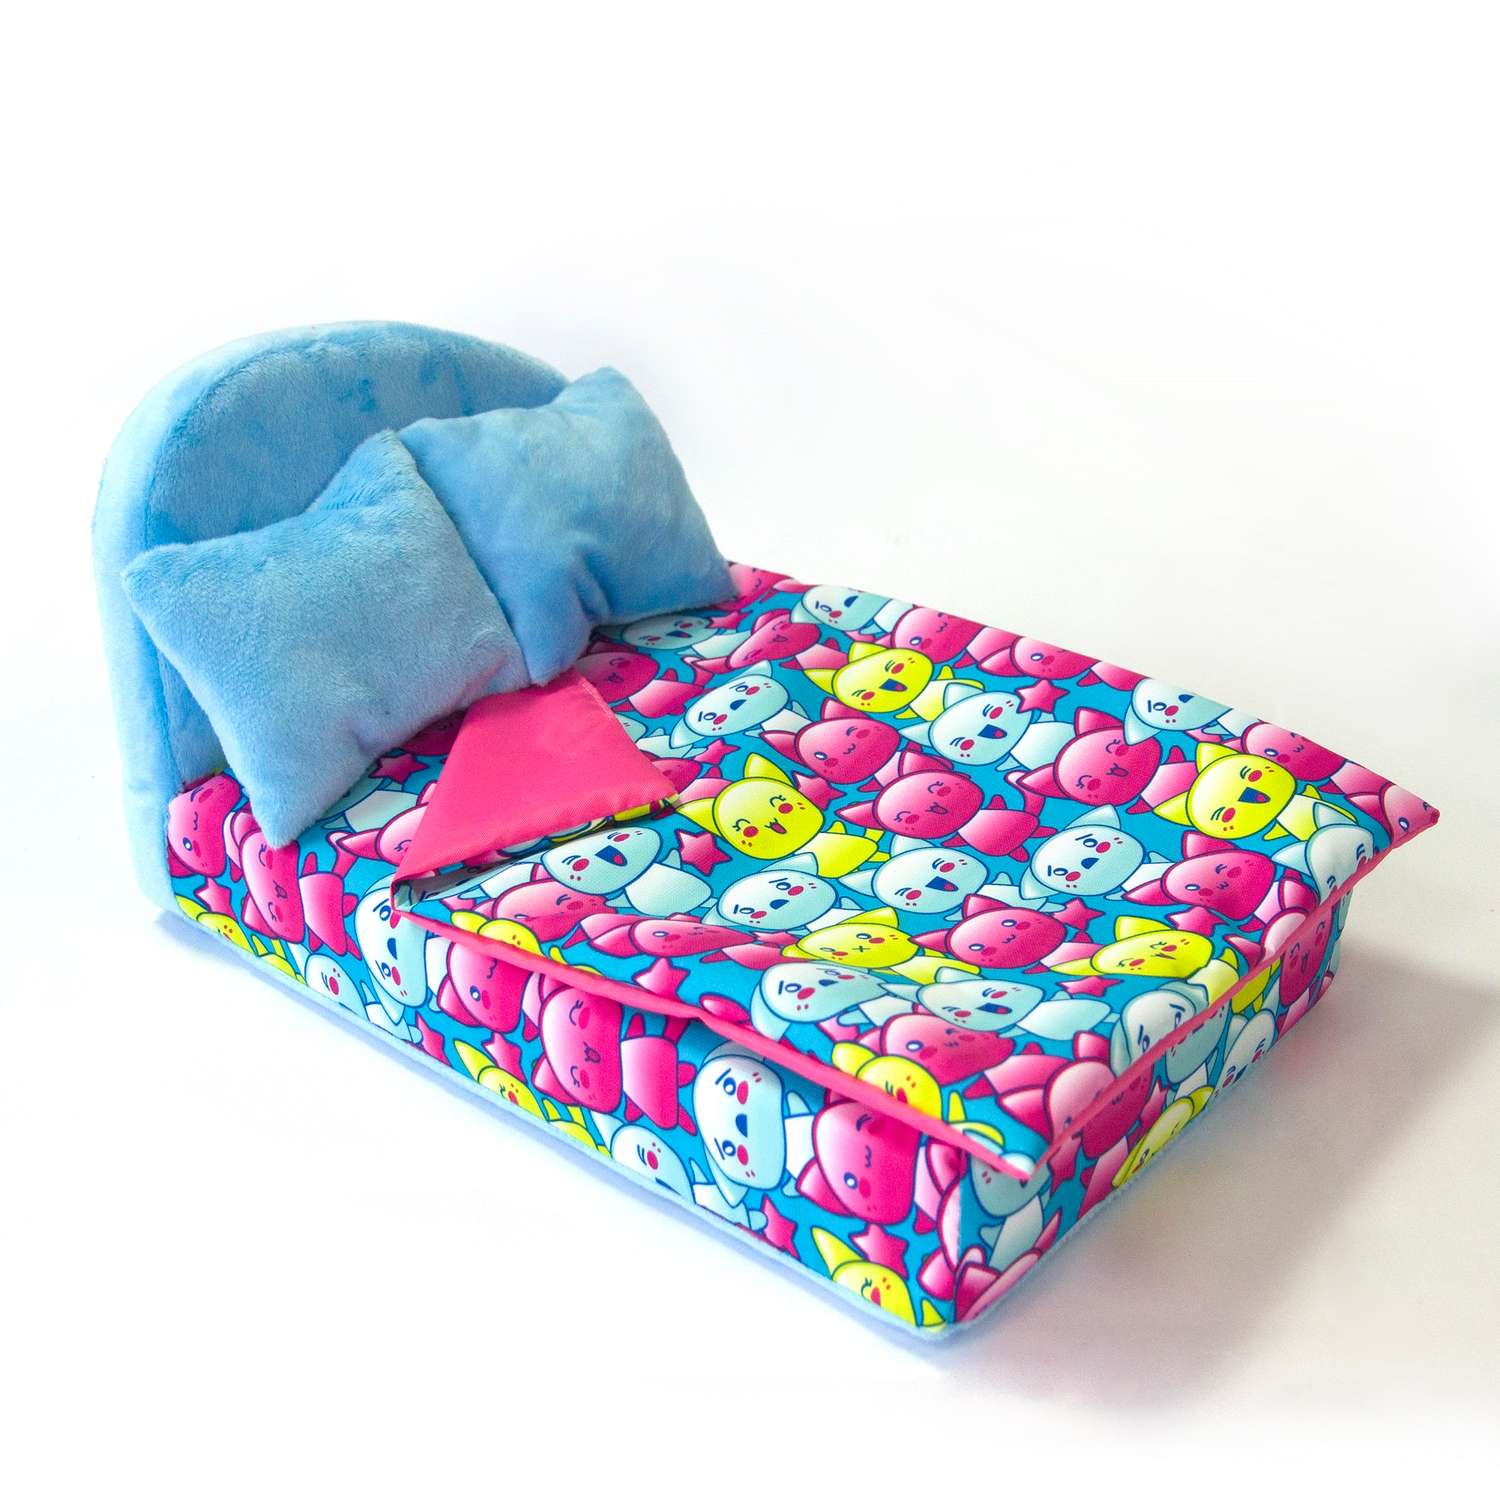 Набор мебели для кукол Belon familia Принт хор котят бирюзовый кровать круглая 2 подушки НМ-003-32 - фото 1